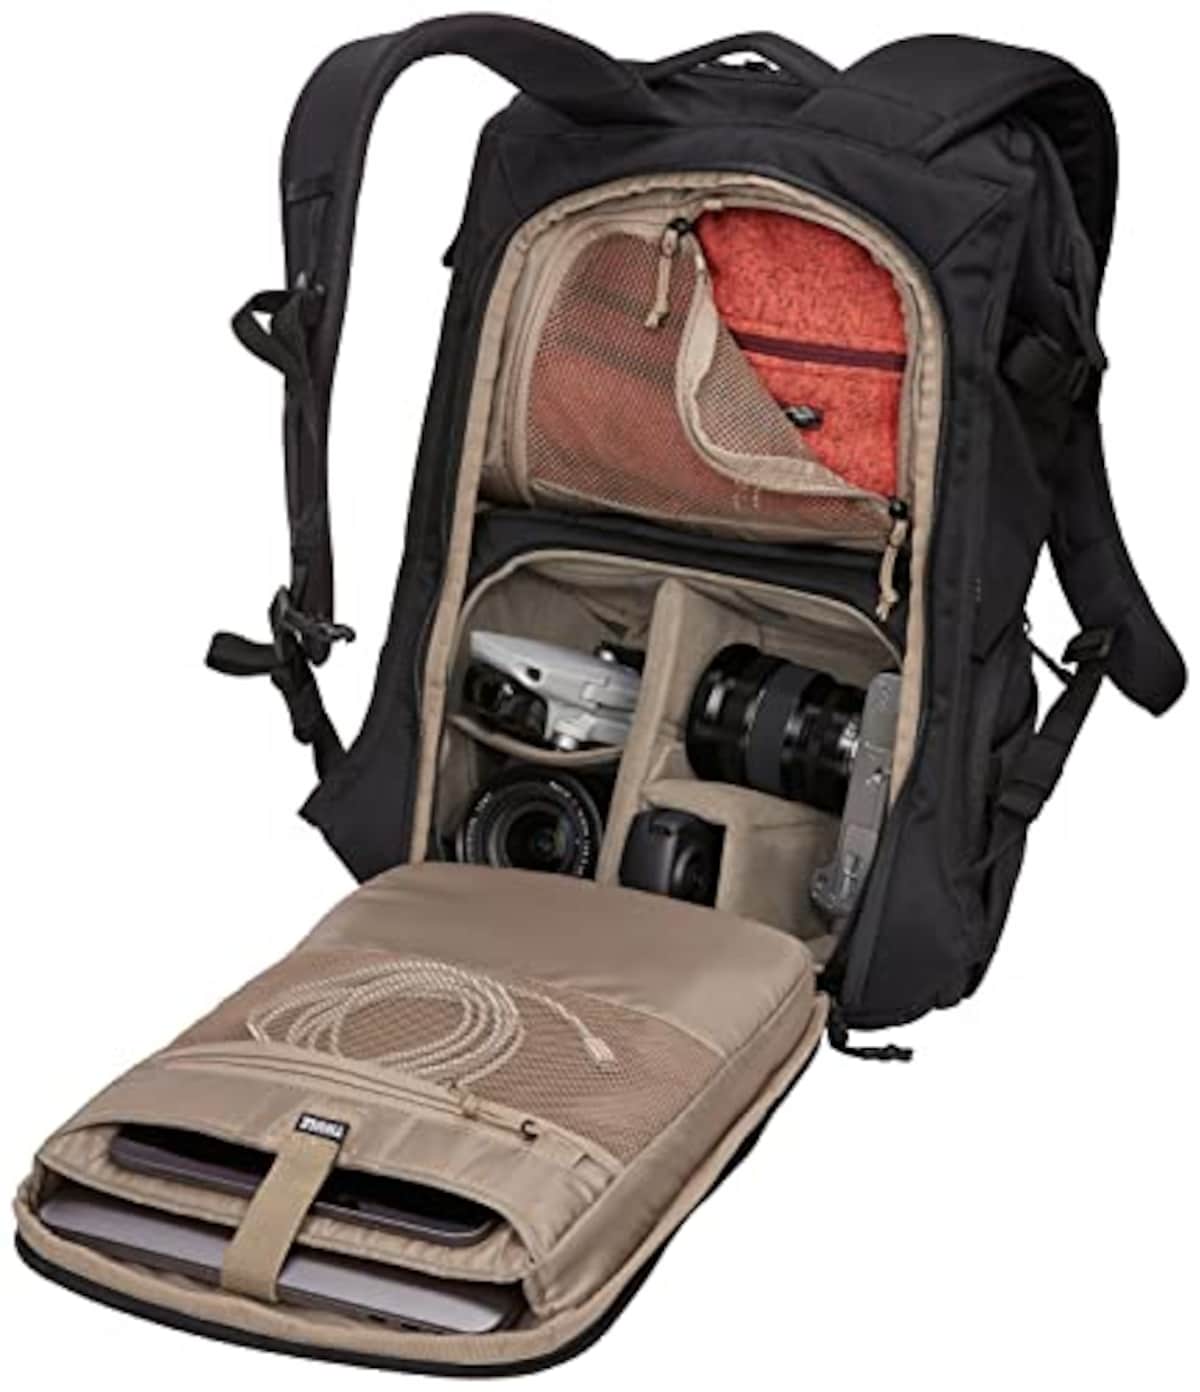  [スーリー] カメラ用バッグパック Covert Camera Backpack Black 容量:24L 3203906画像5 